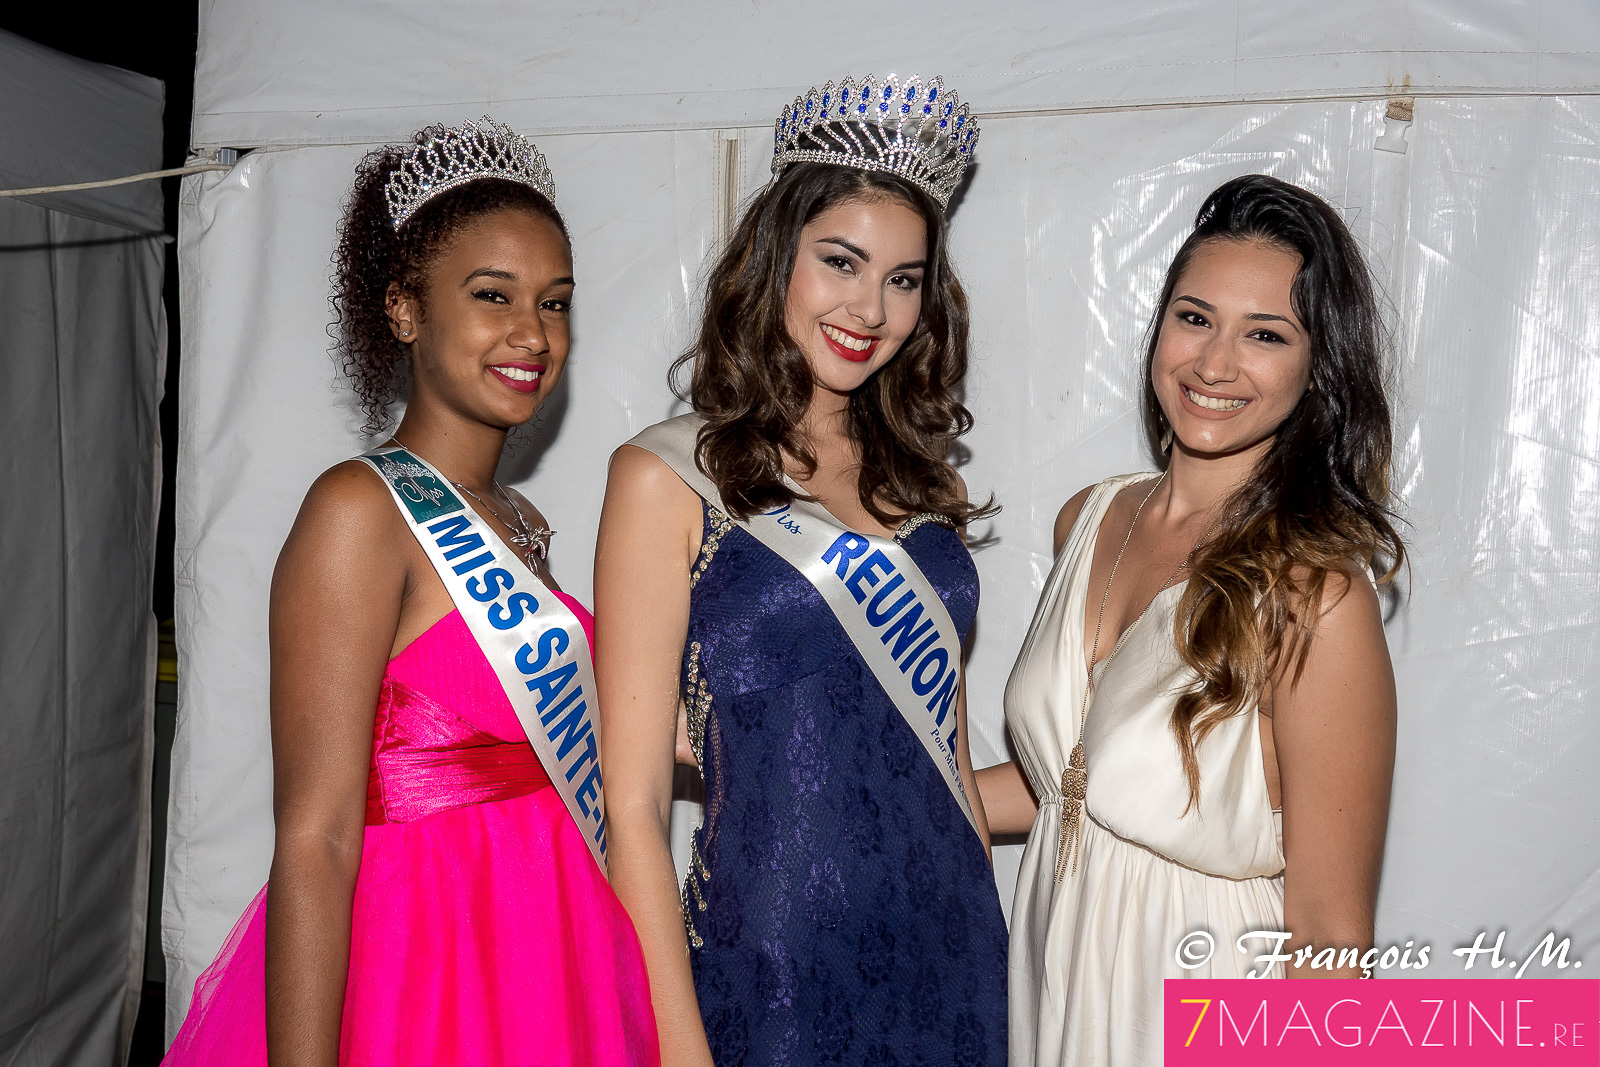 Audrey Lebon, Ambre N'guyen et Anne-Sophie de Peretti, candidate Miss Réunion 2016